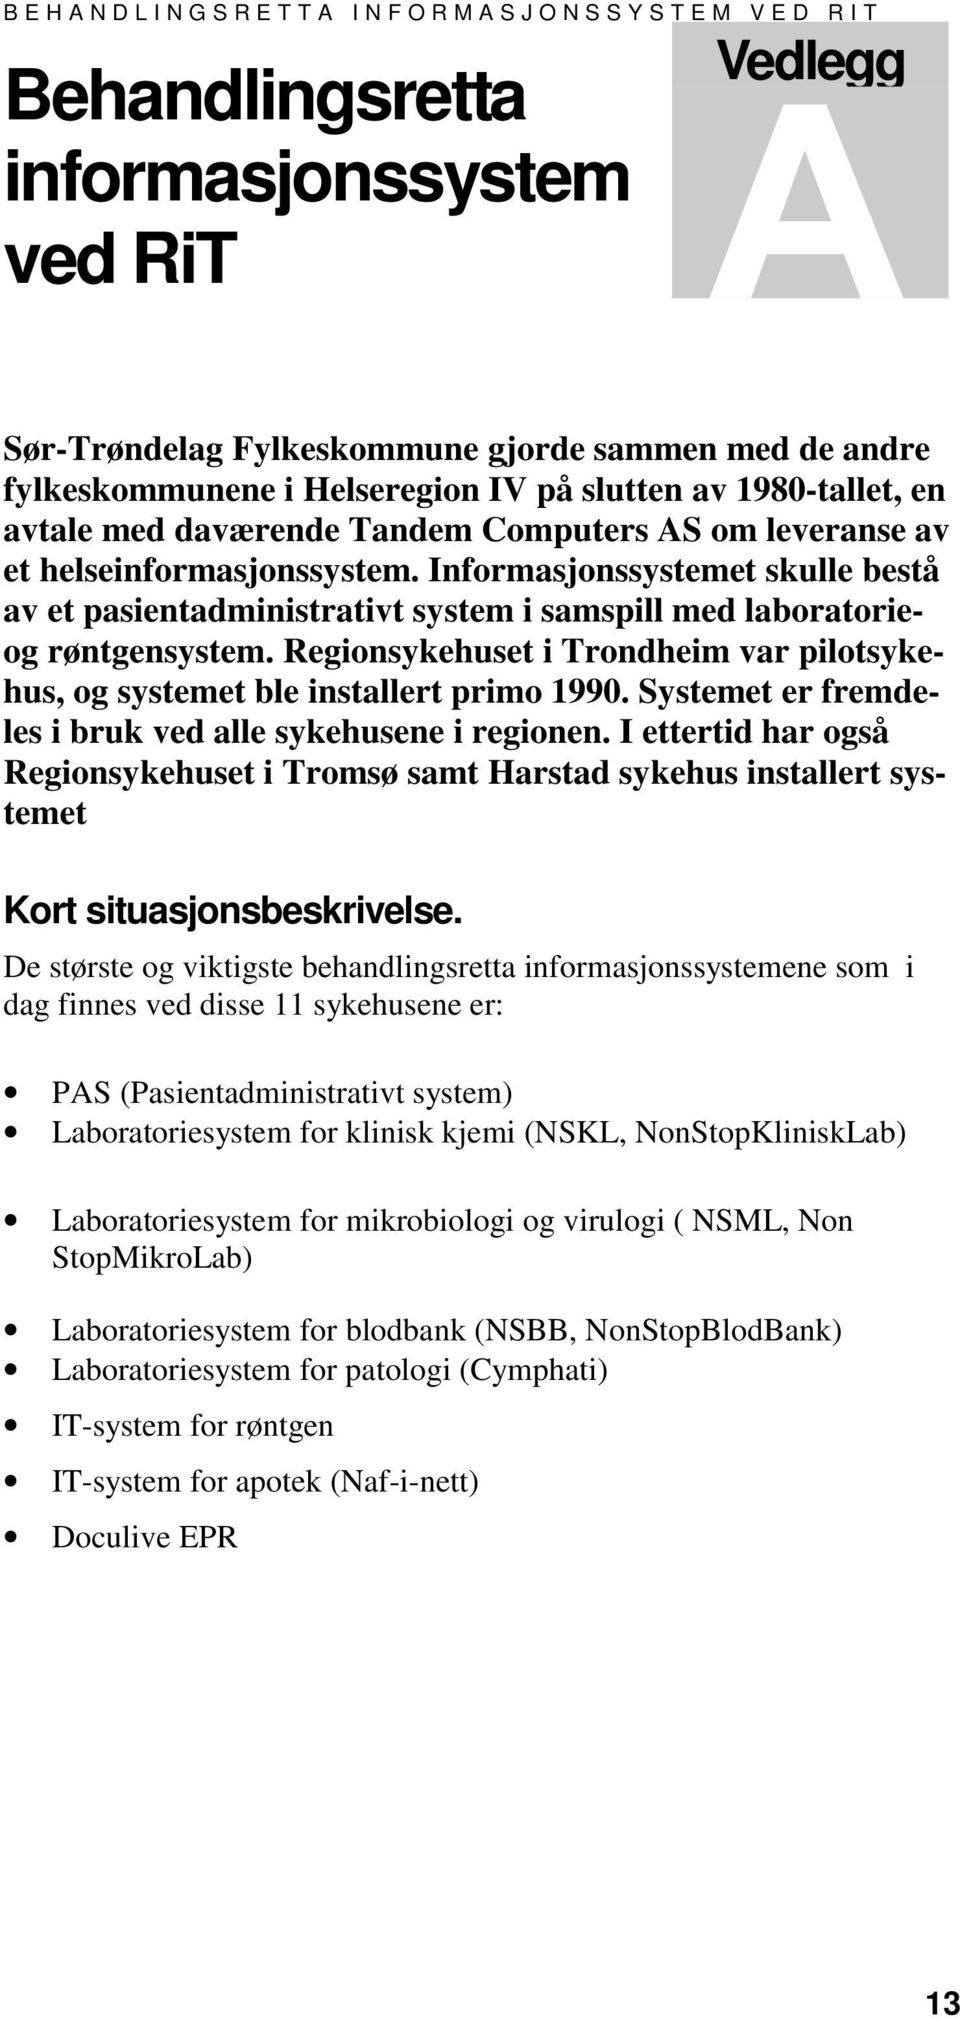 Informasjonssystemet skulle bestå av et pasientadministrativt system i samspill med laboratorieog røntgensystem. Regionsykehuset i Trondheim var pilotsykehus, og systemet ble installert primo 1990.